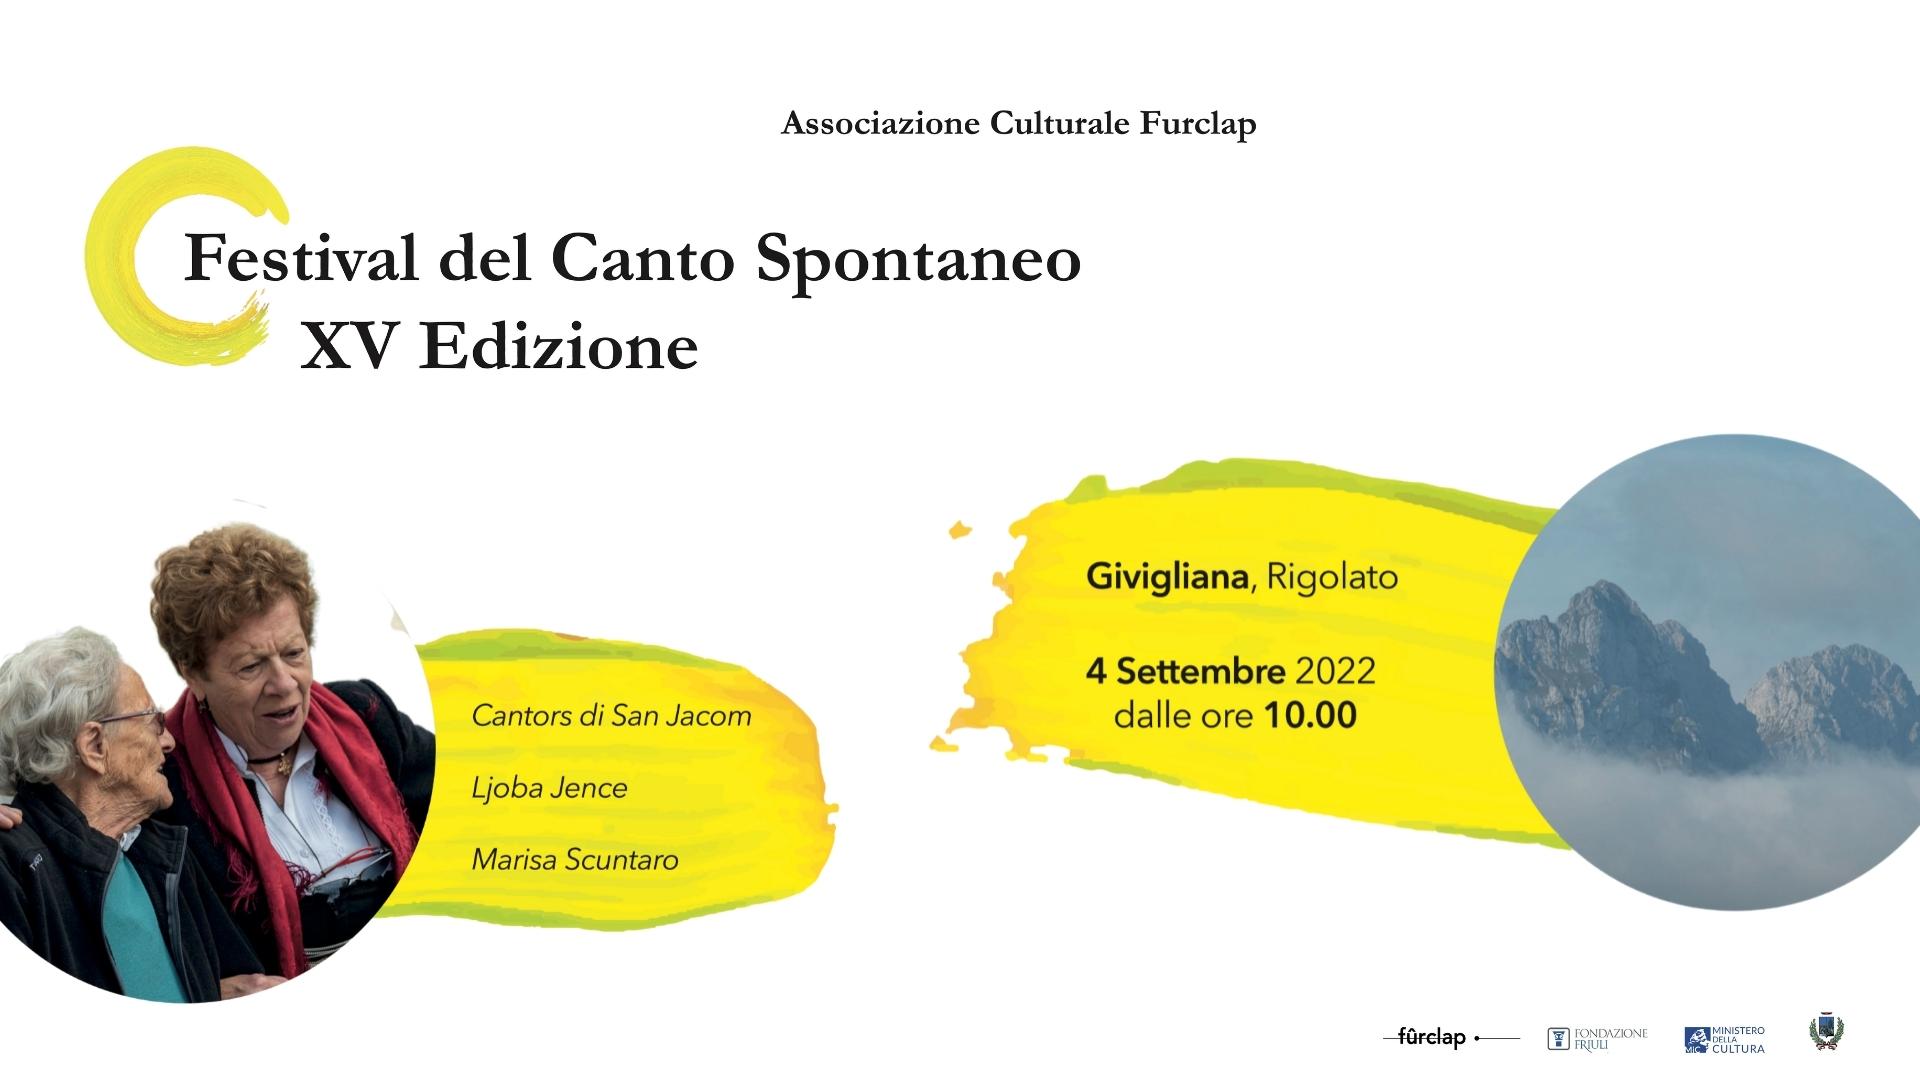 Festival del Canto Spontaneo – XV Edizione